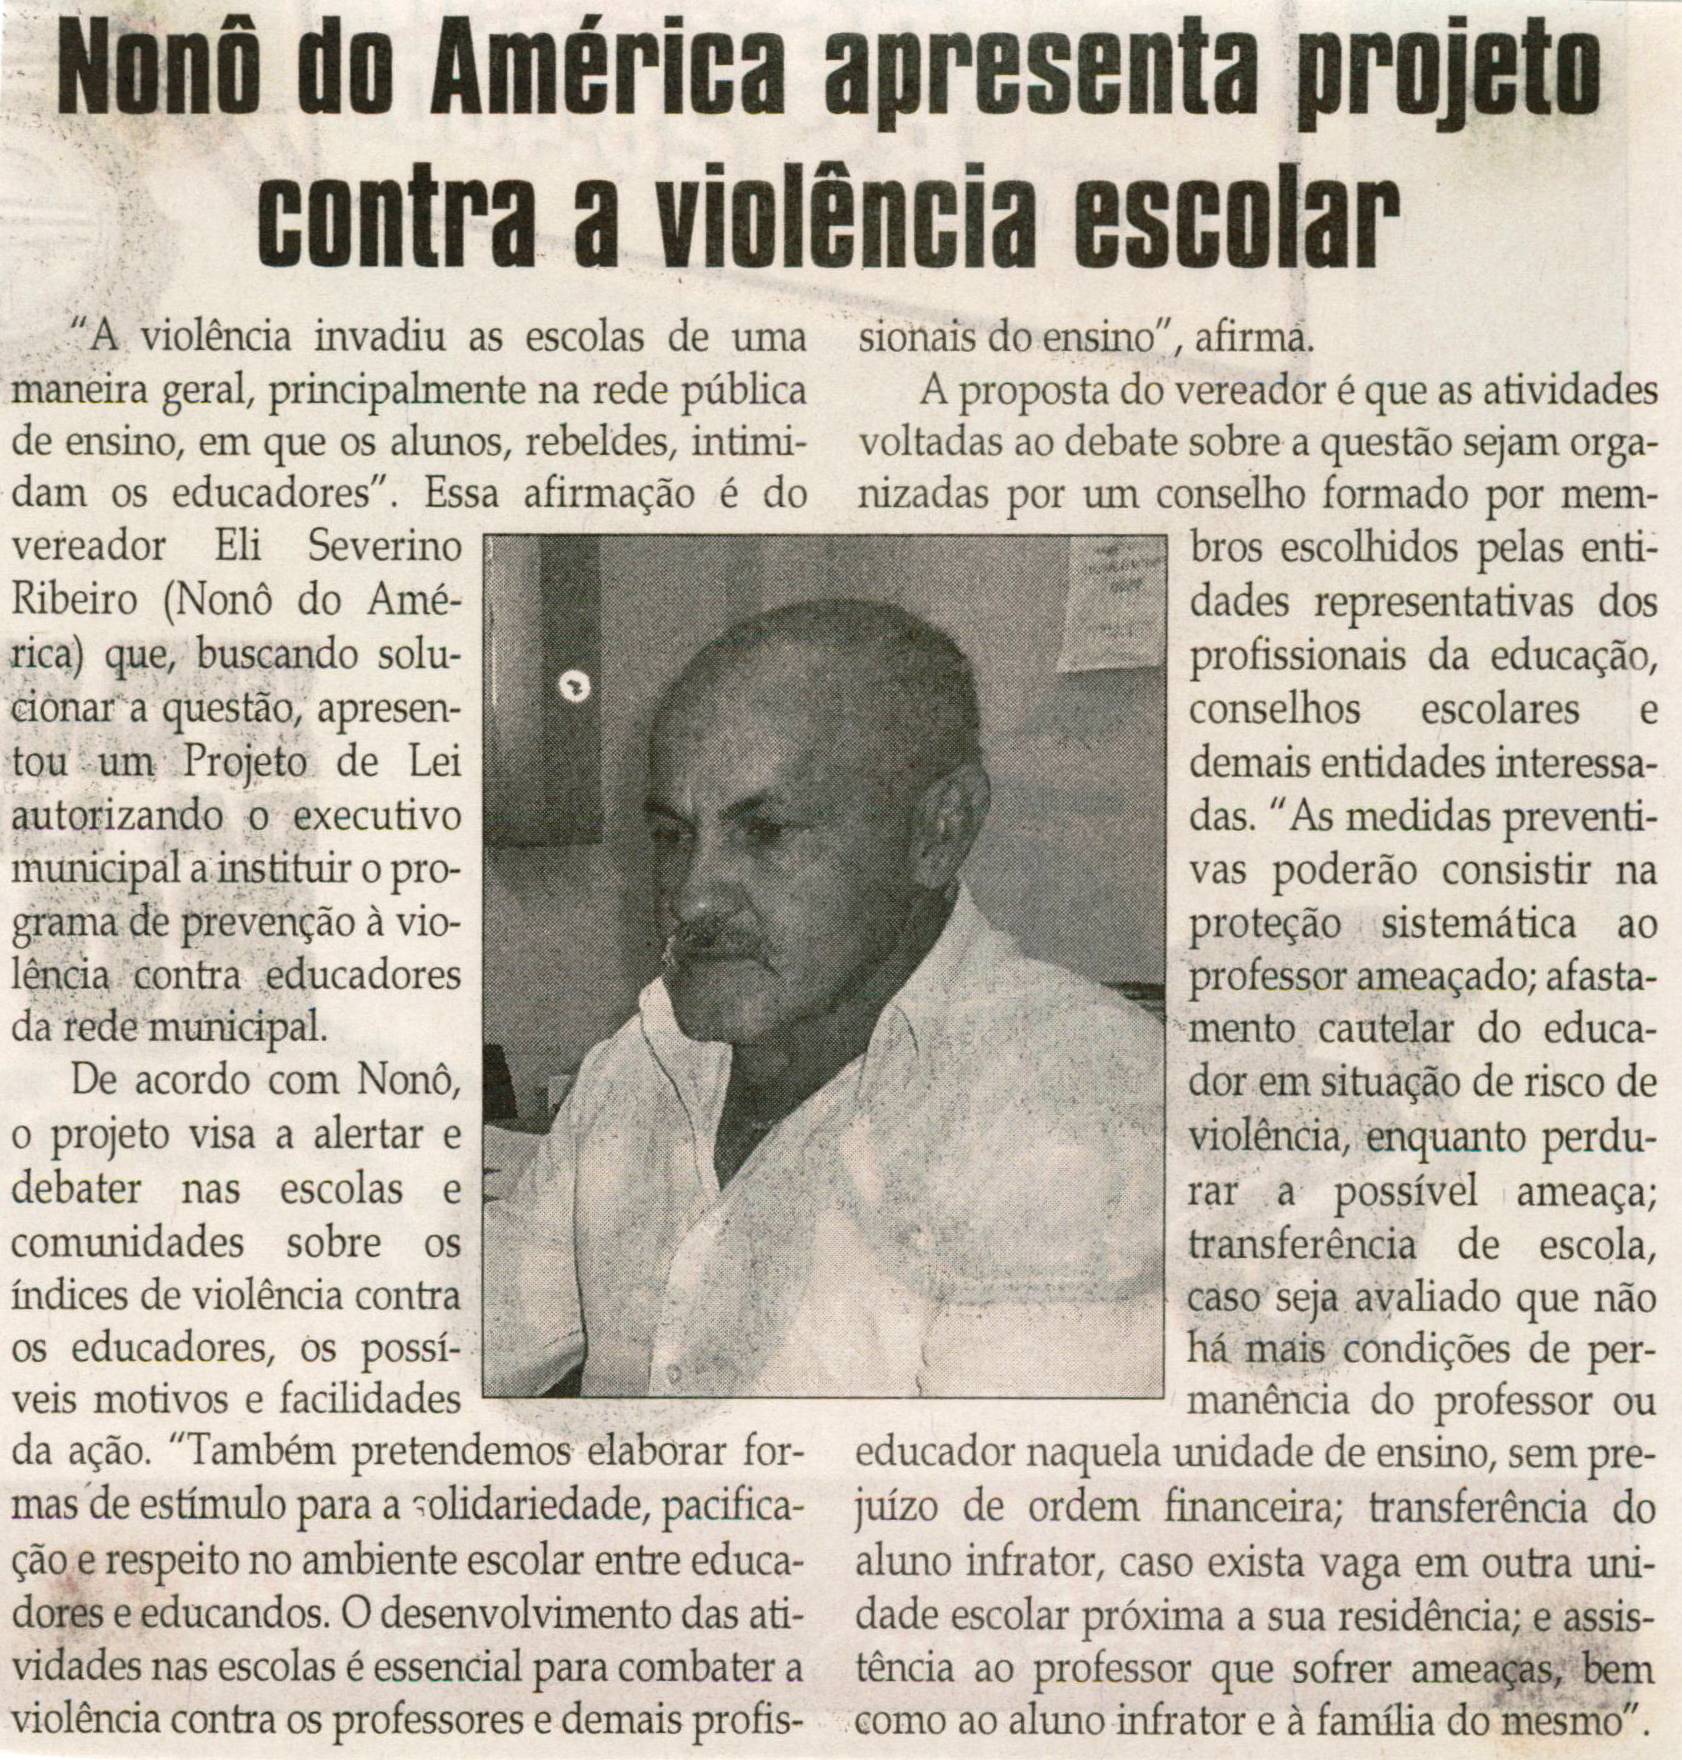 Nonô do América apresenta projeto contra a violência escolar. Jornal Correio da Cidade, 02 out. 2010, p. 04.